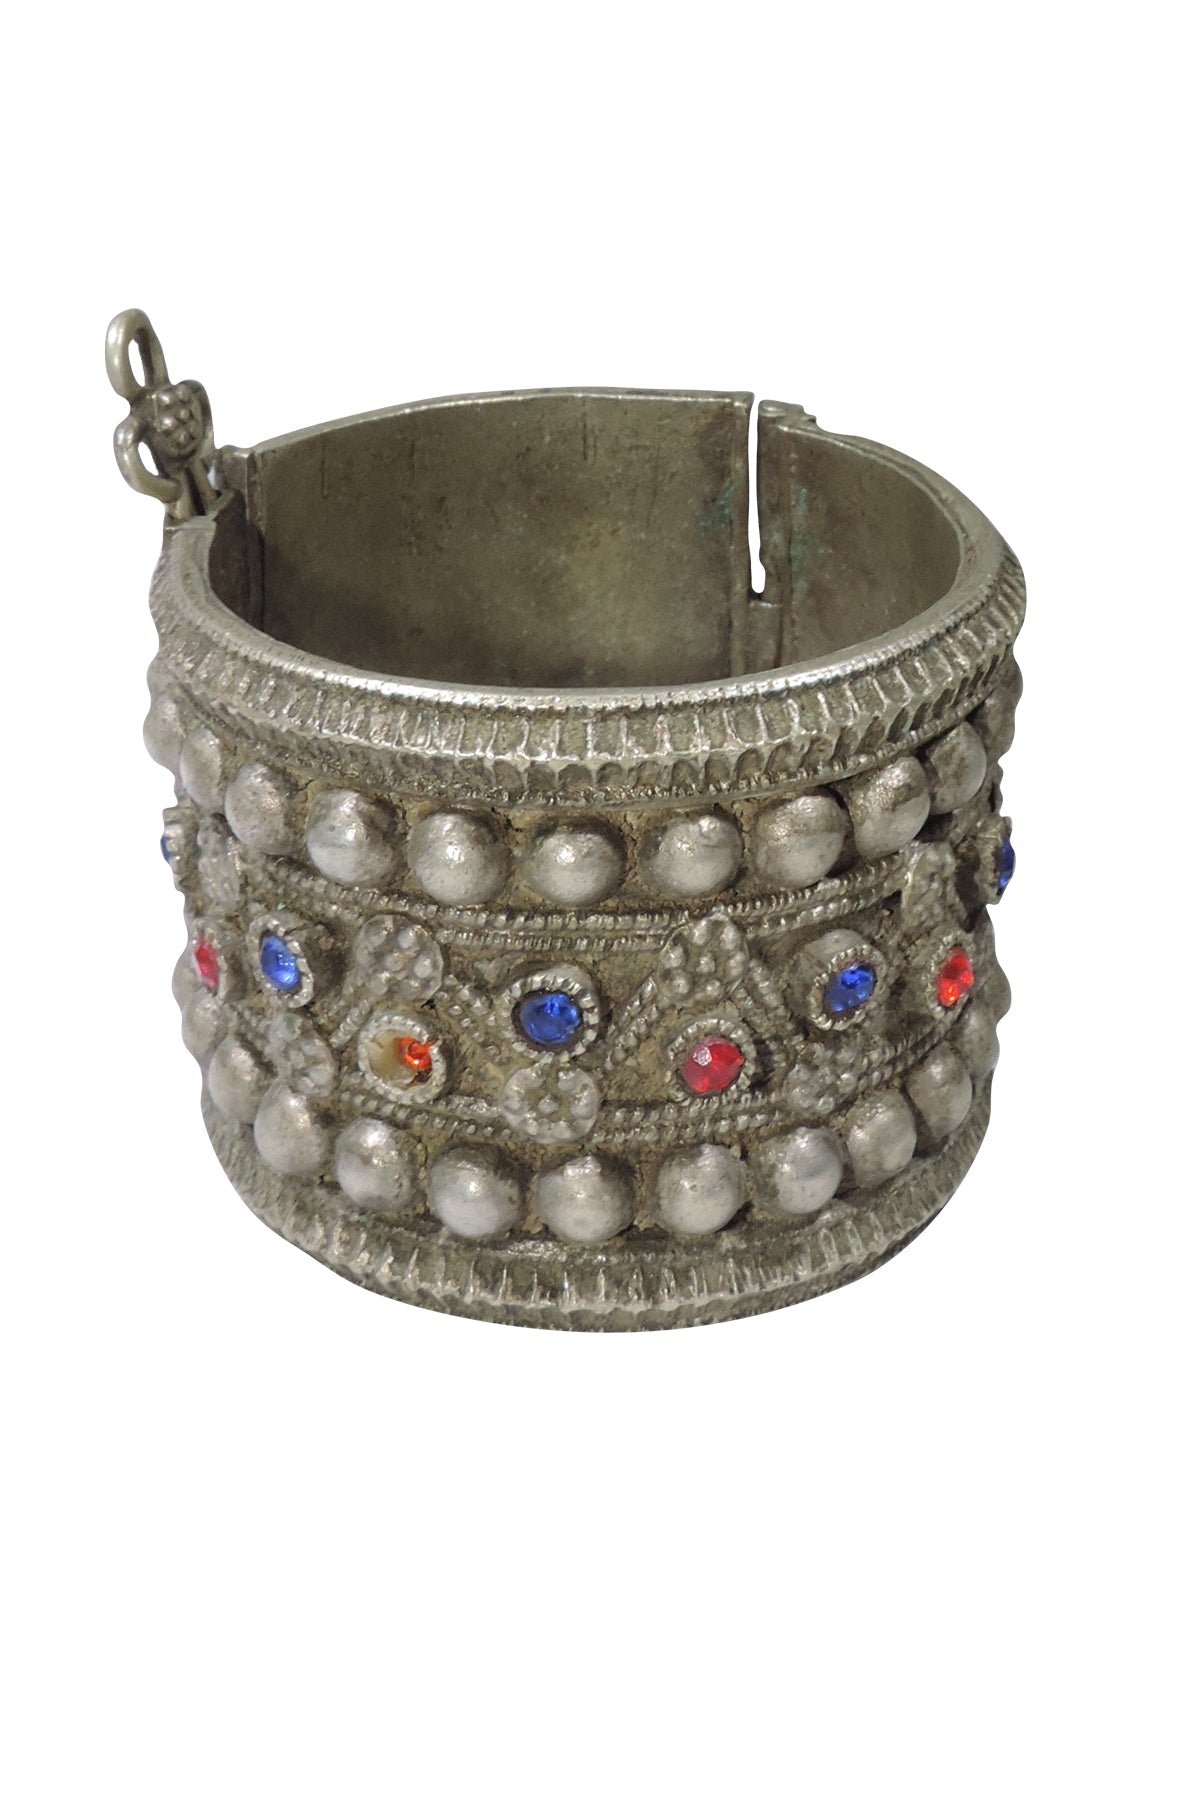 Vintage Turkmen Bracelet With Blue/Red Crystals